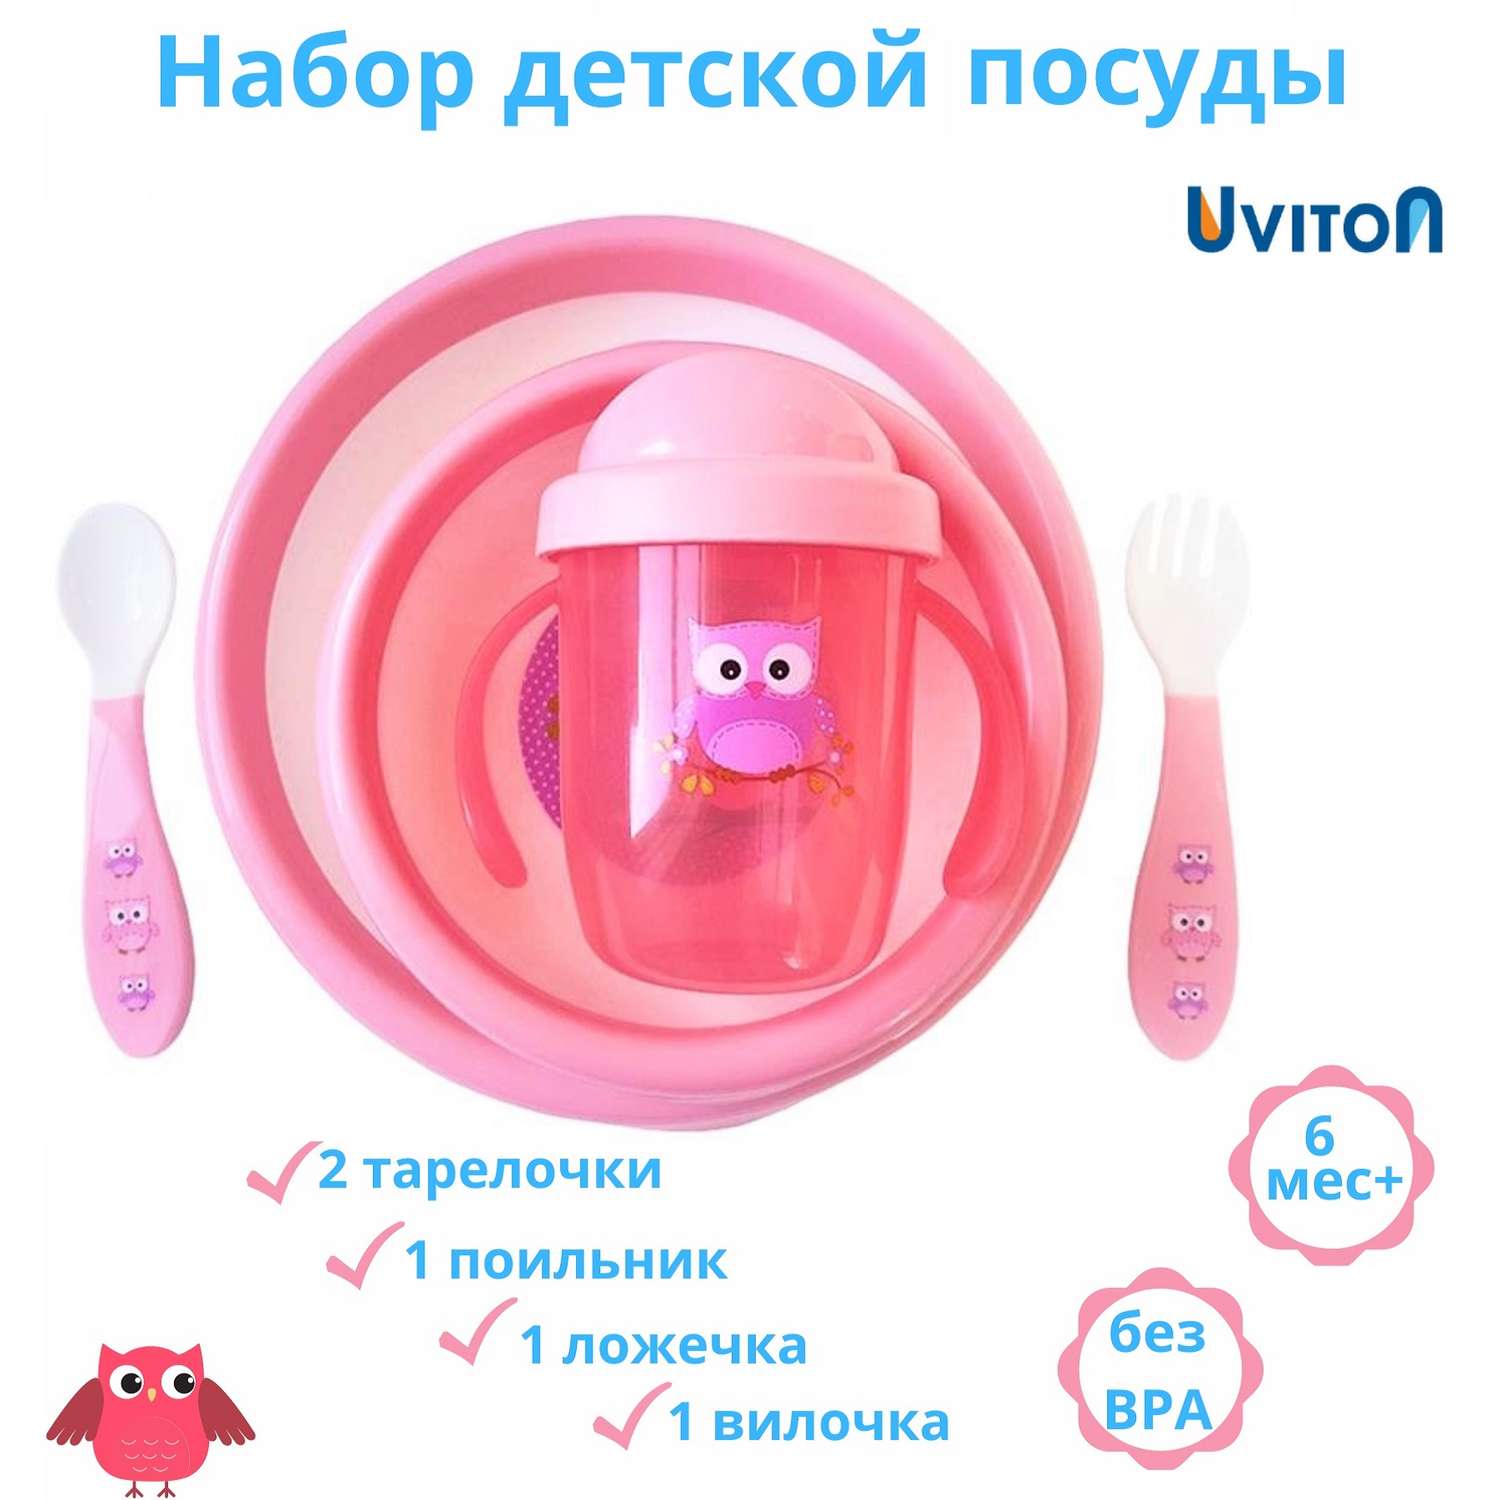 Набор детской посуды Uviton 5 предметов Розовый 0144/03 - фото 2